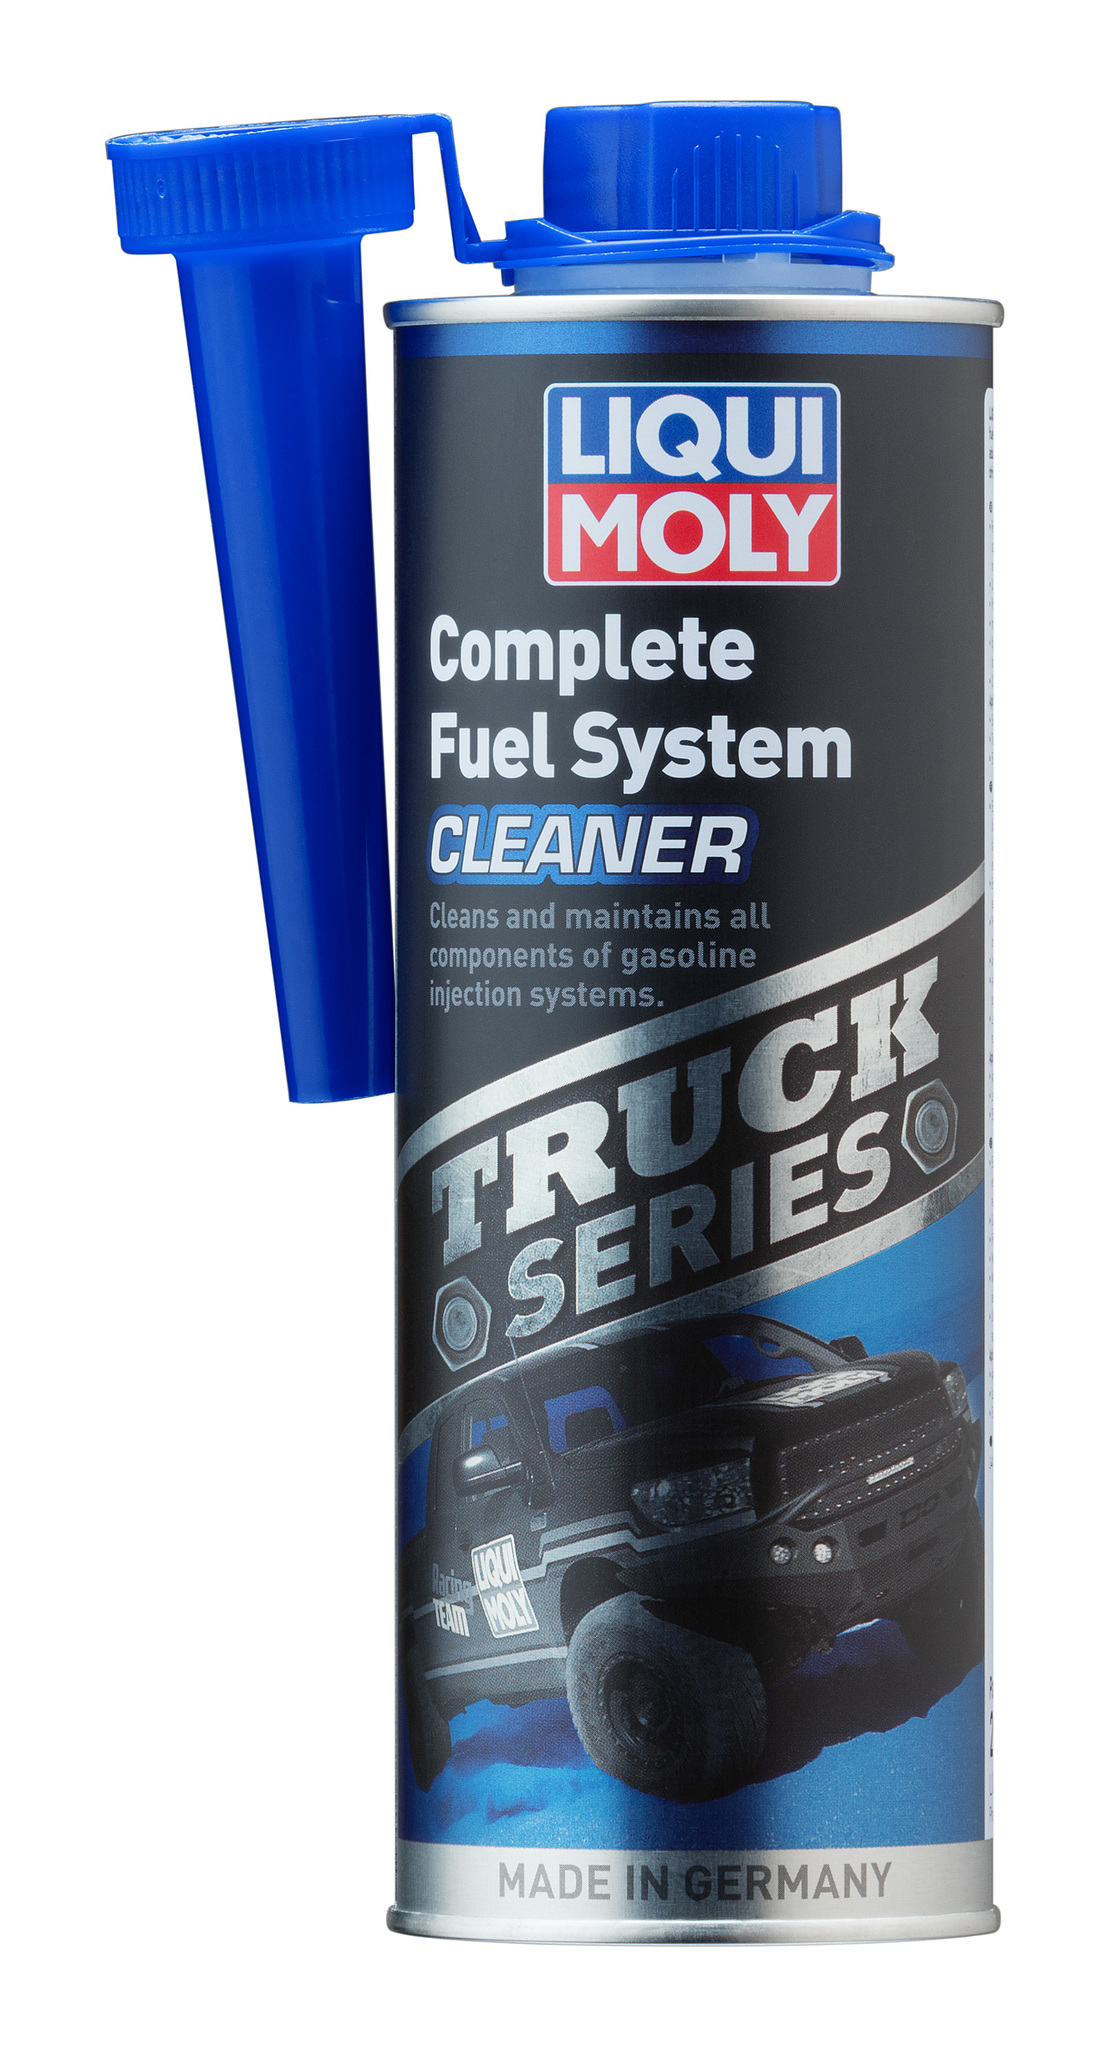 Liqui Moly Truck Series Complete Fuel System Cleaner Очиститель бензиновых систем внедорожников и пикапов